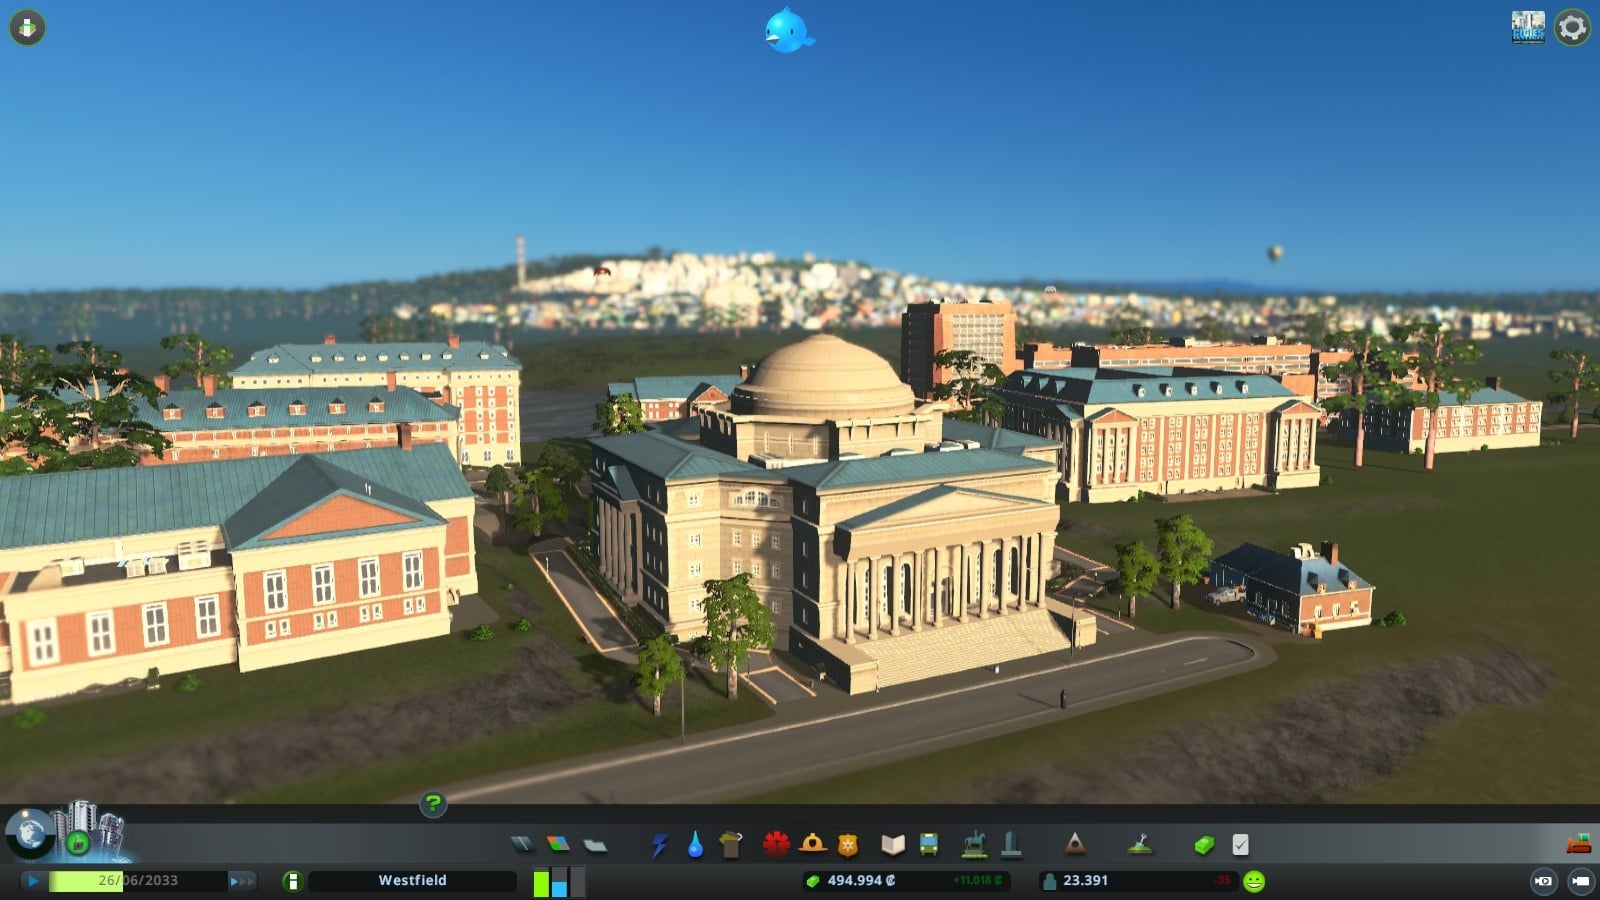 Cities: Skylines sembra ancora buono per un gioco del suo genere, anche senza mods grafici. Chi non vorrebbe studiare qui?